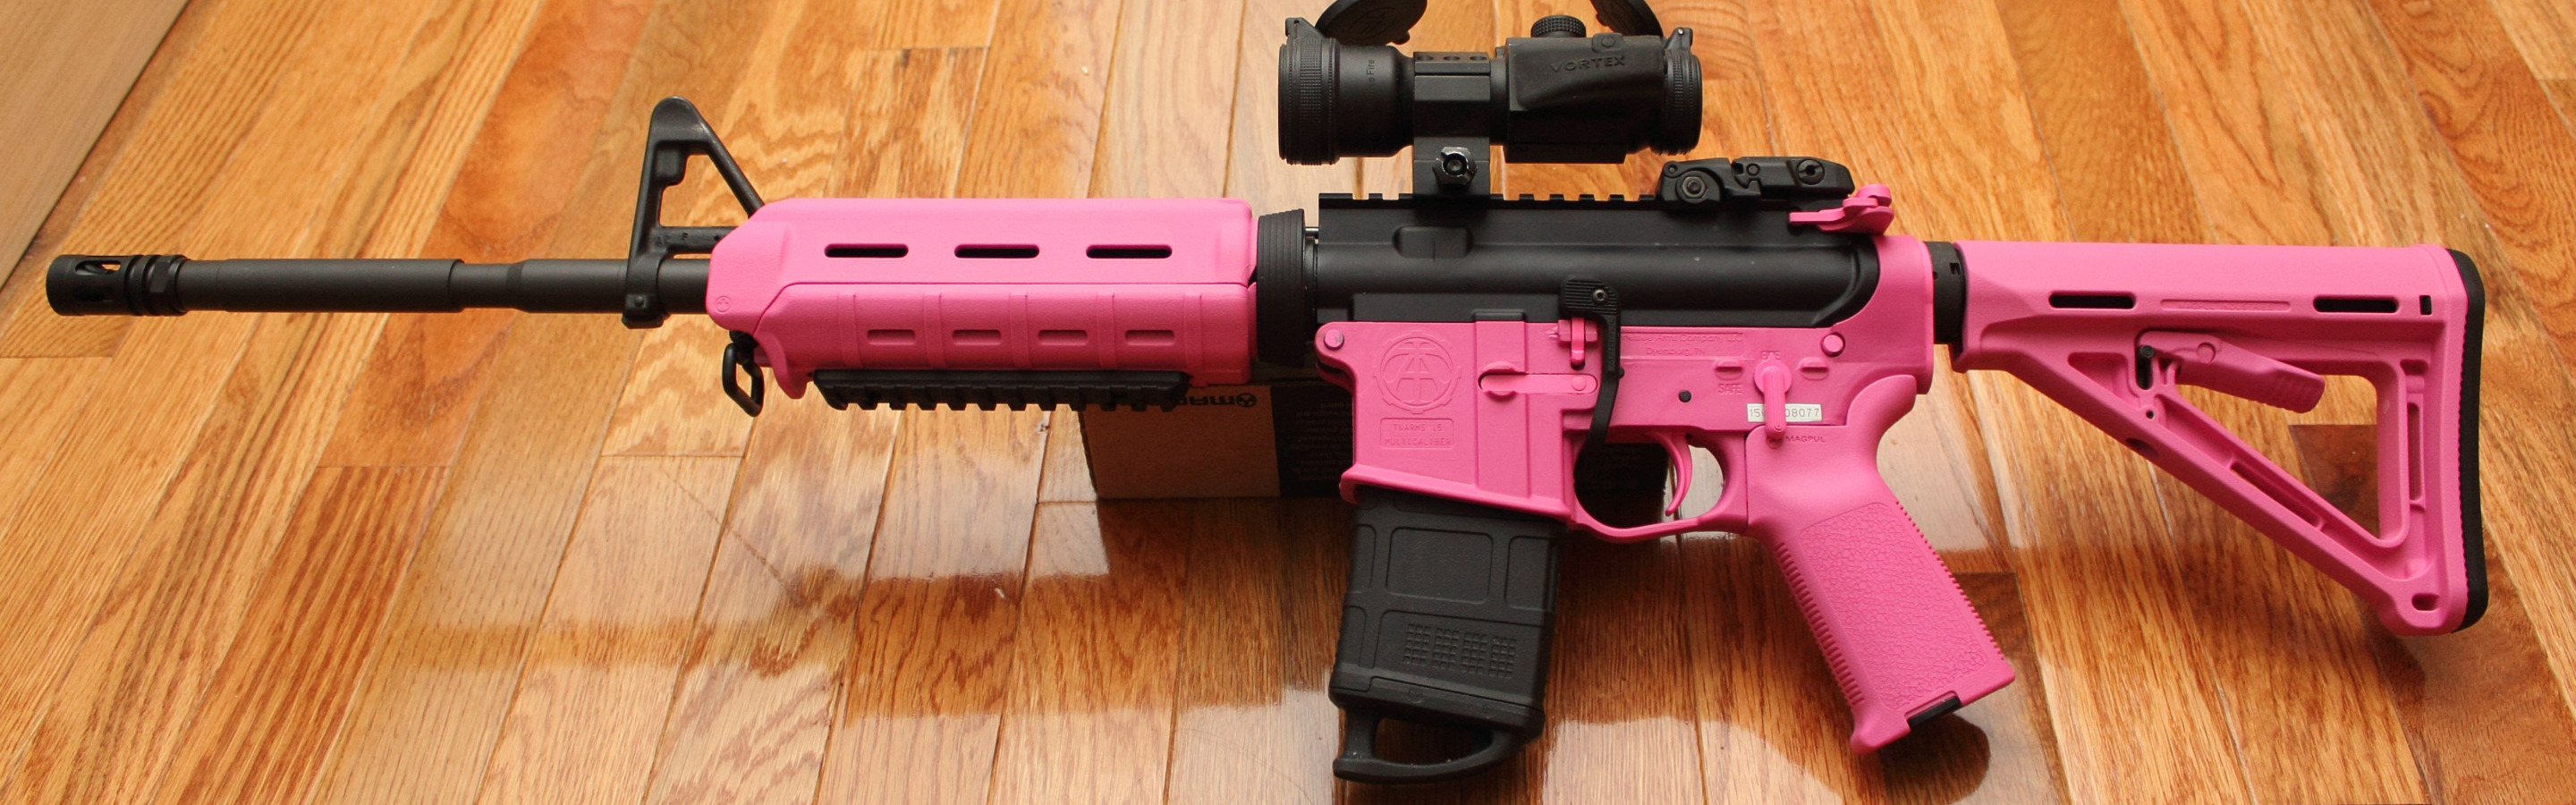 ÐžÐ±Ð¾Ð¸ Ð´Ð»Ñ� Ñ€Ð°Ð±Ð¾Ñ‡ÐµÐ³Ð¾ Ñ�Ñ‚Ð¾Ð»Ð°. pink, ar15, assault rifle, magpul. 